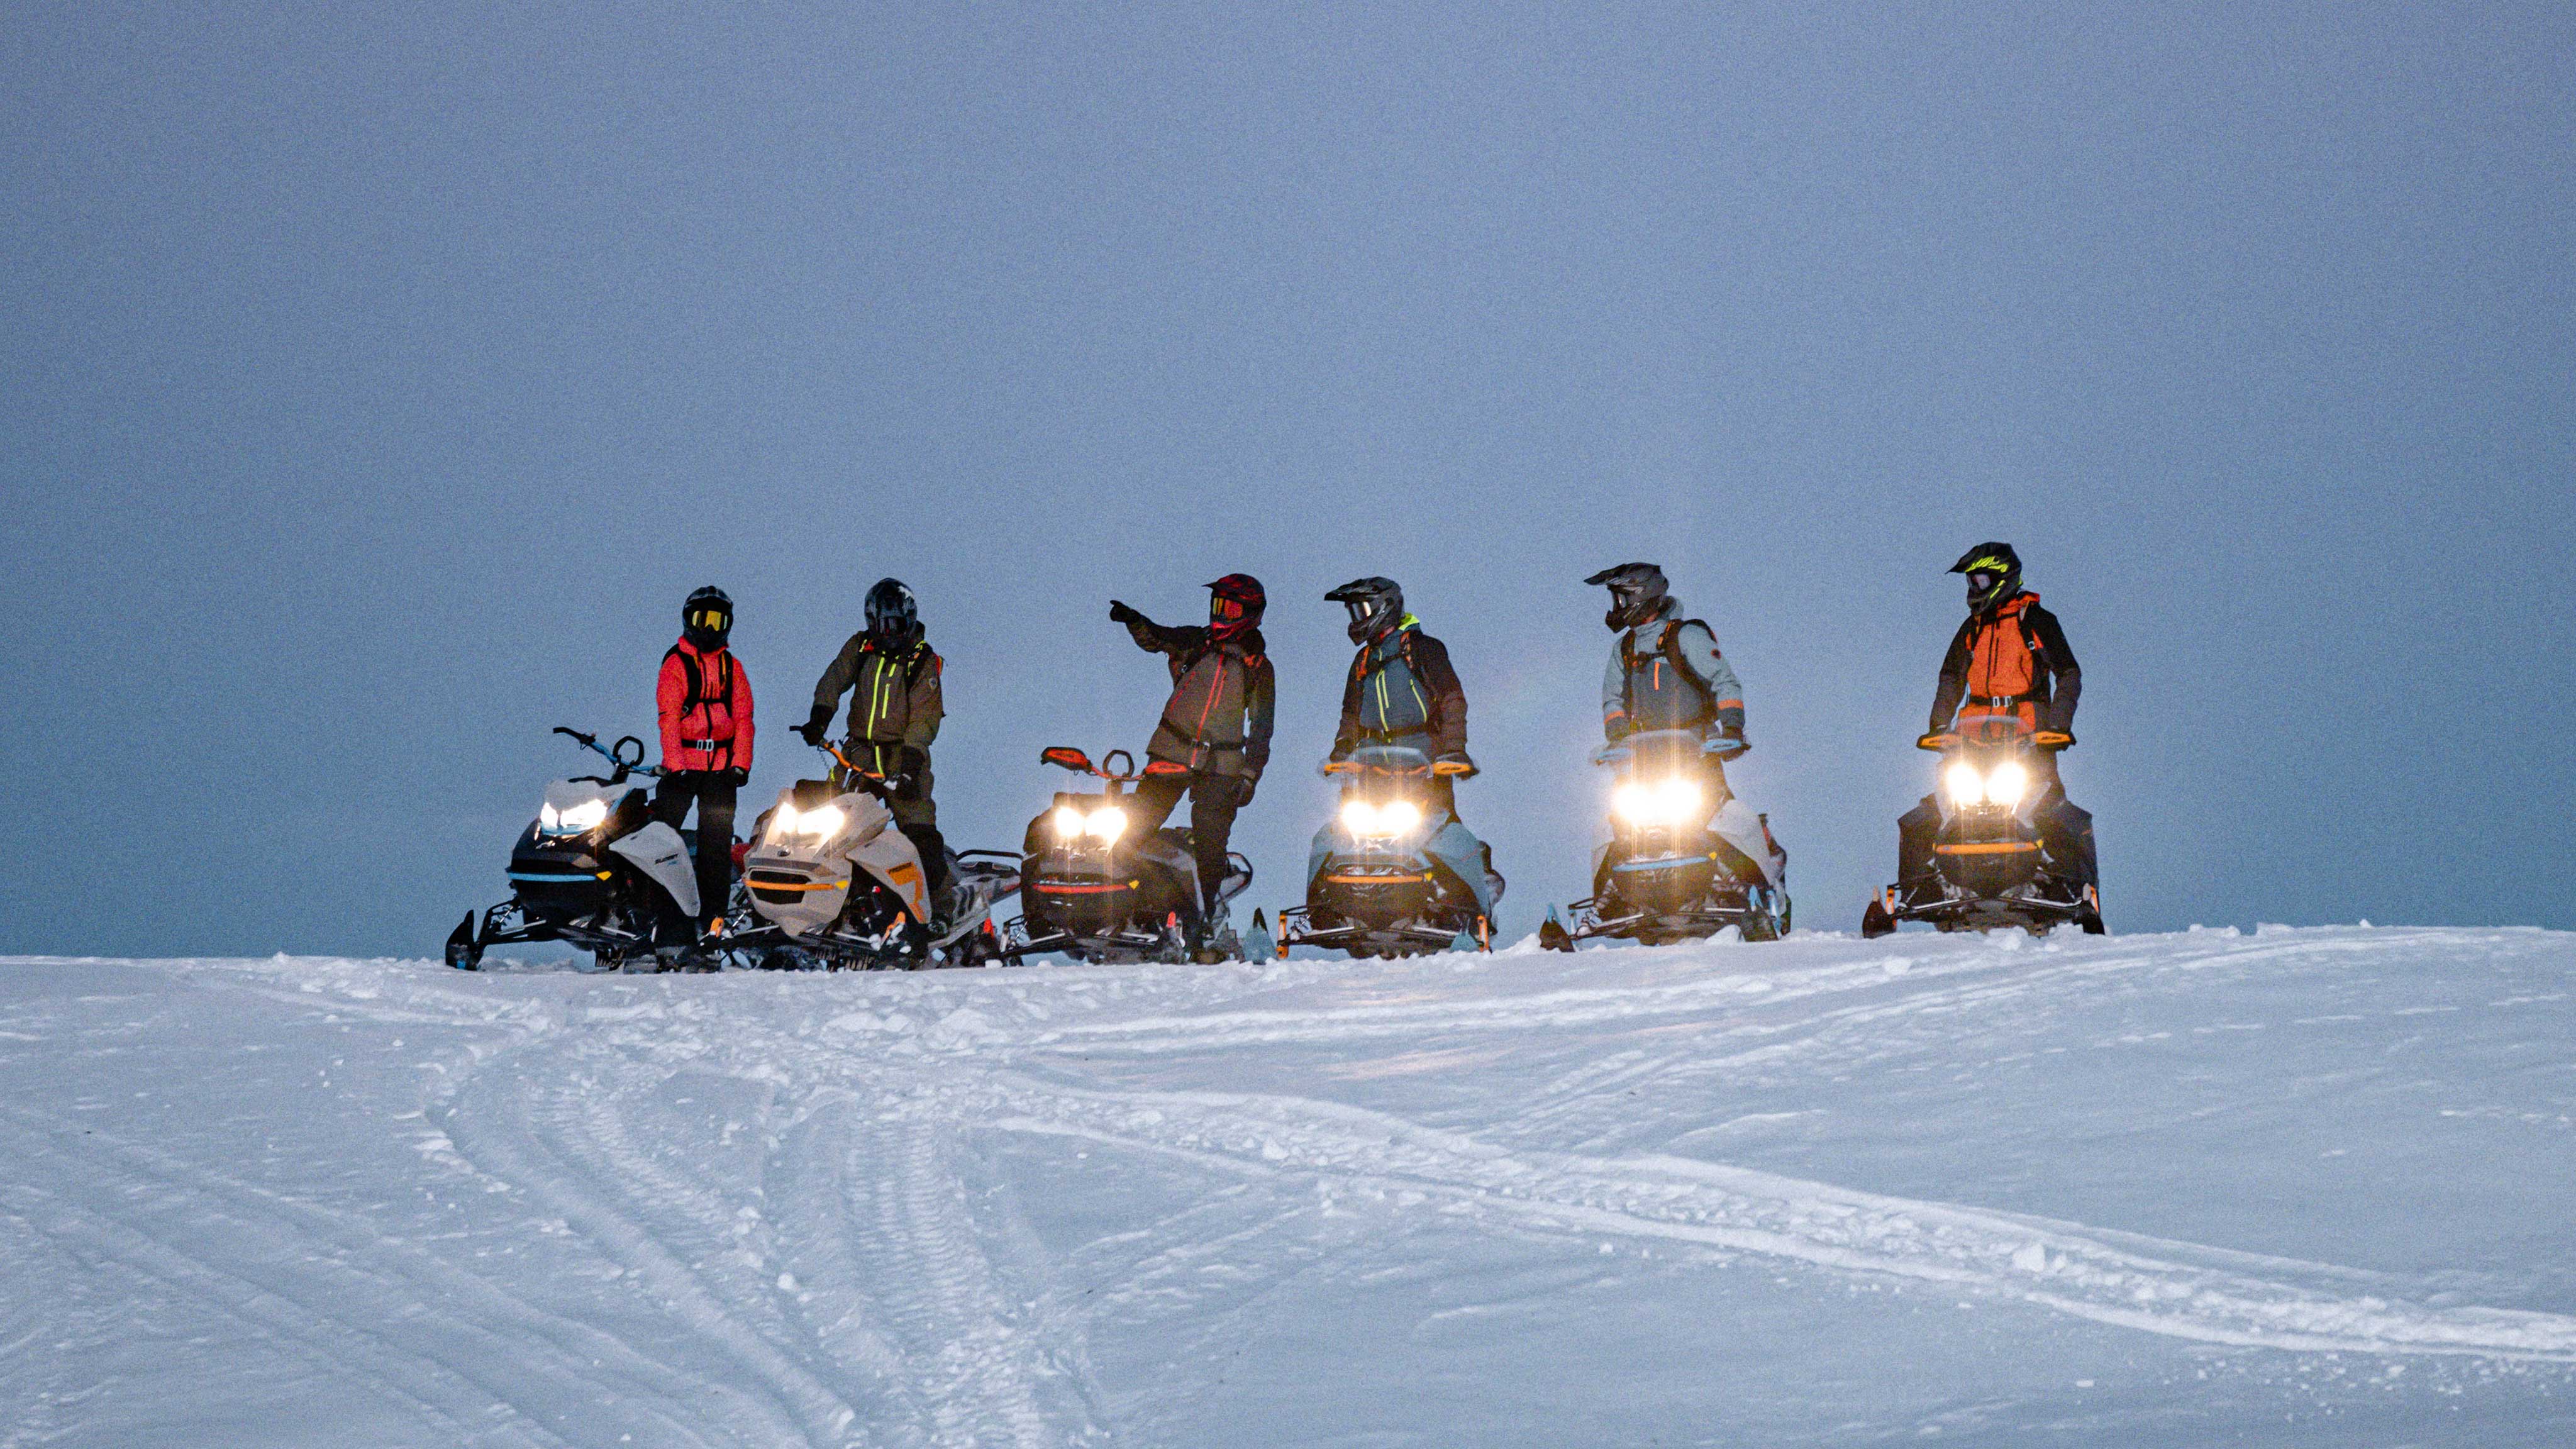 Grupp som kör de nya 2022 Ski-Doo-snöskotrarna